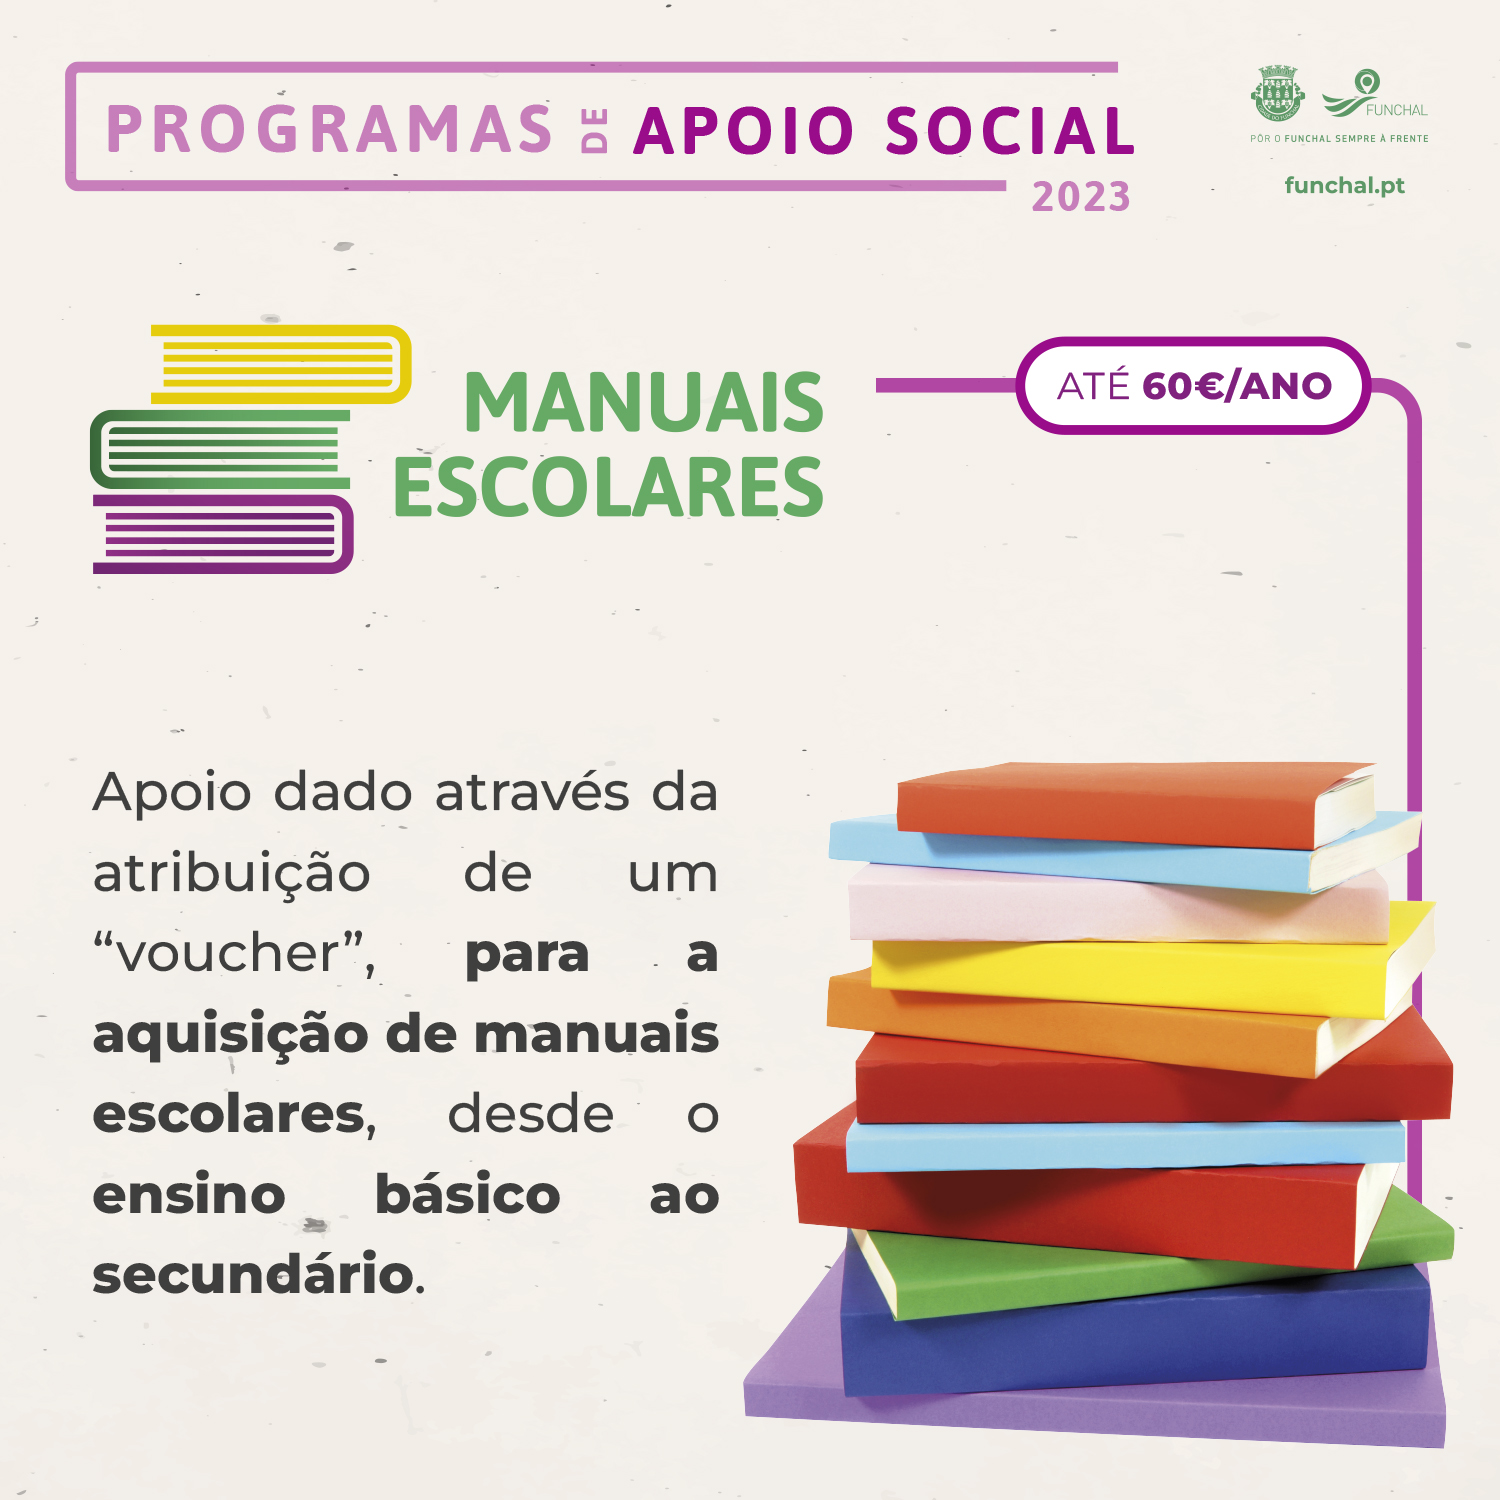 Programas de Apoio Social - Manuais Escolares